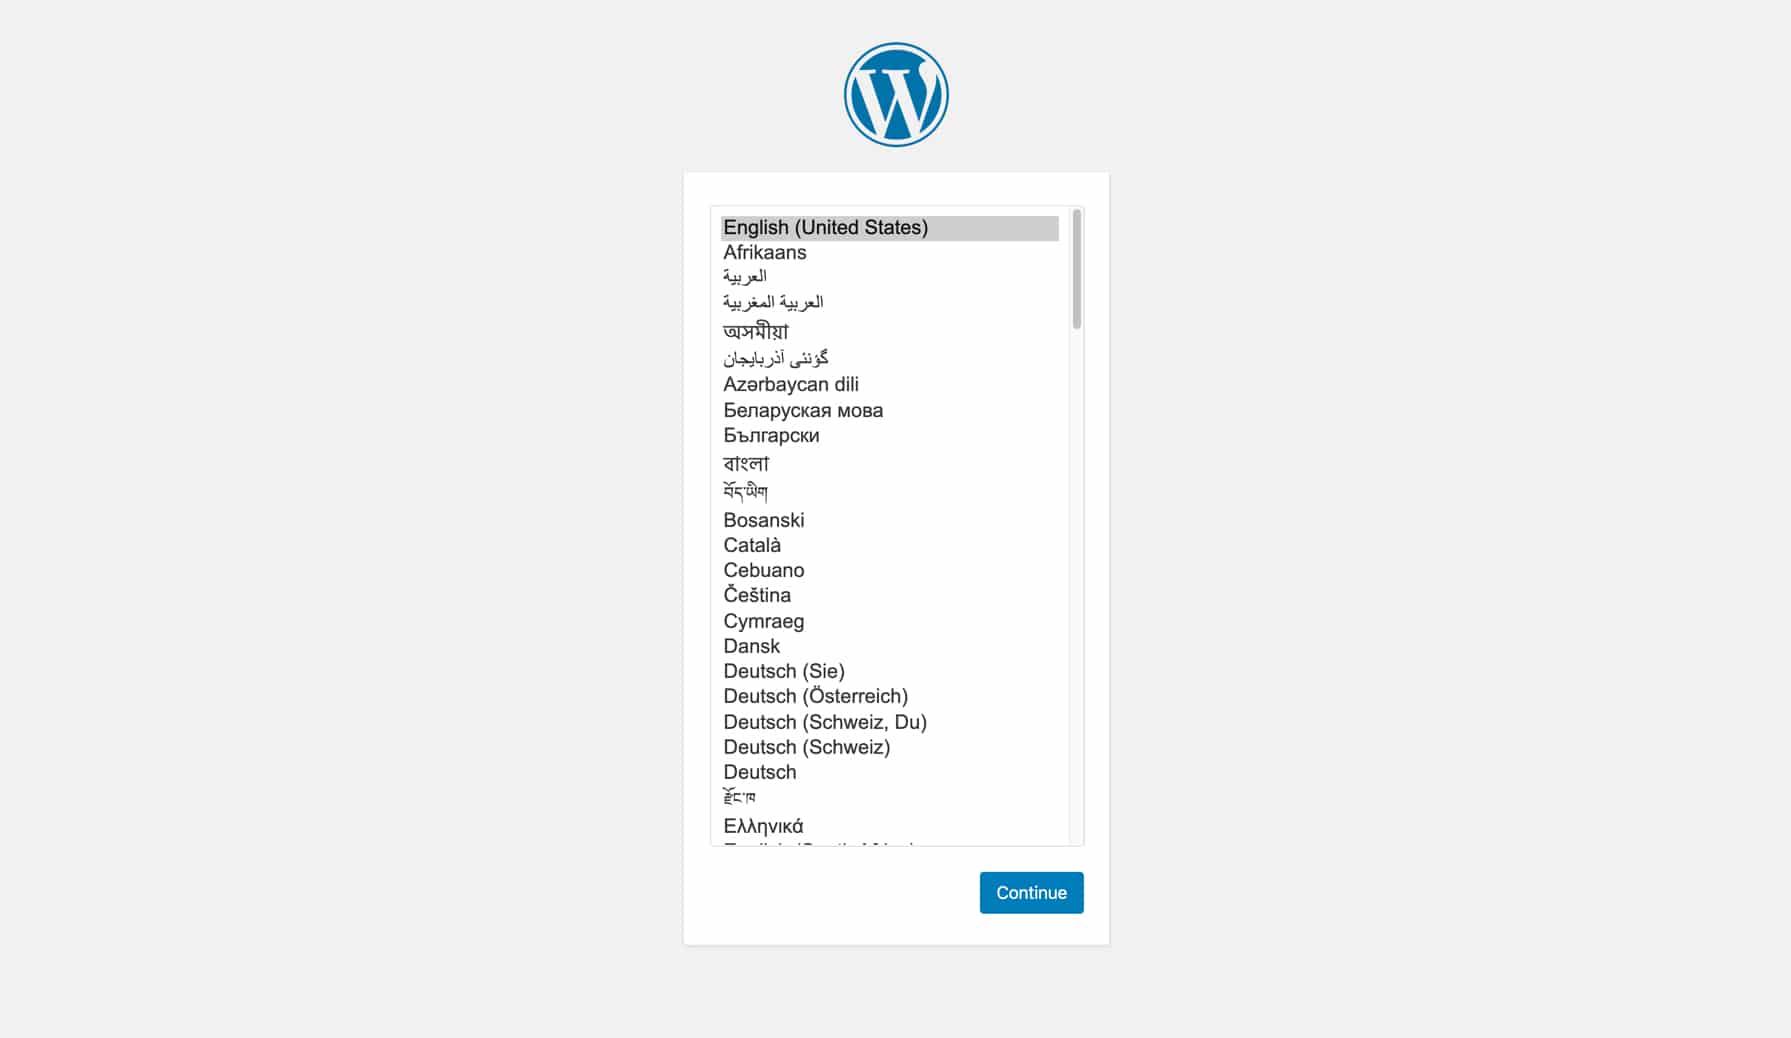 Konfiguriere die neue Installation von WordPress